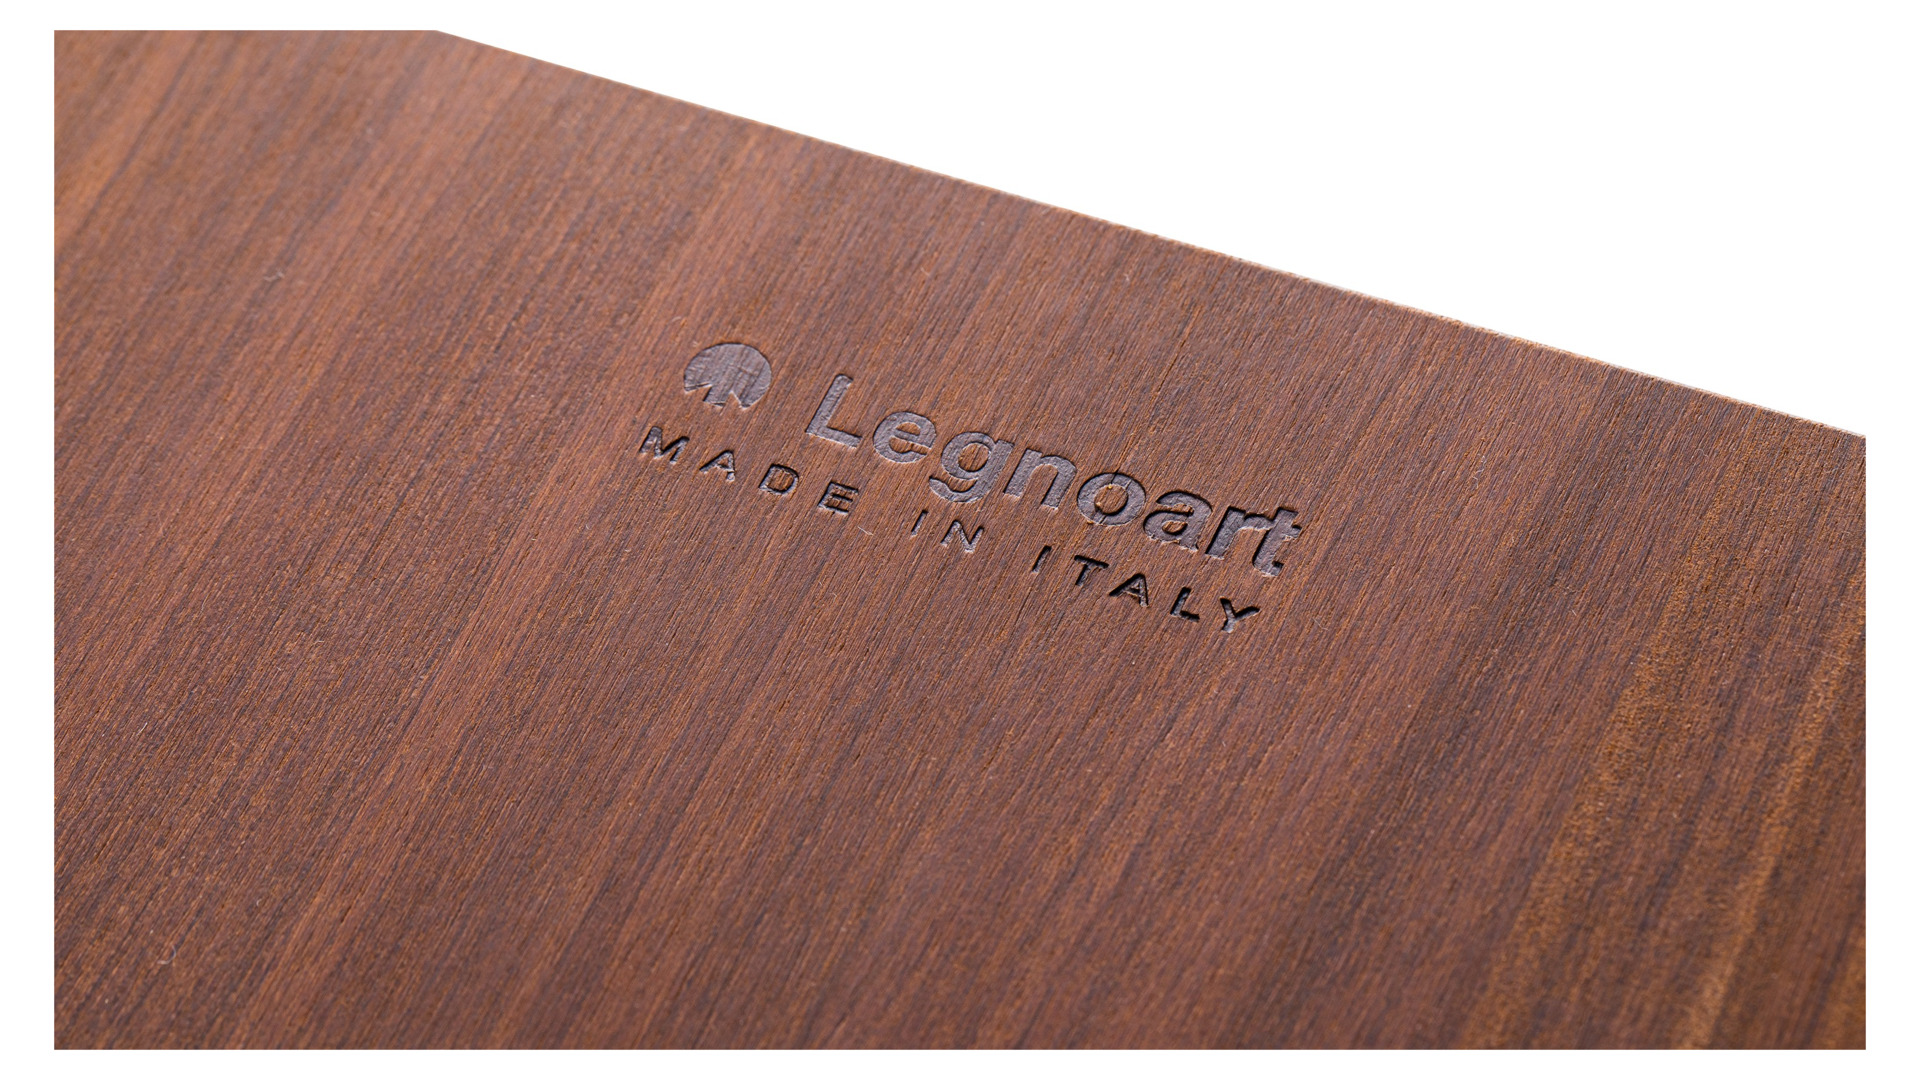 Доска разделочная Legnoart Rialto 37х28х2 см, термо древесина, темная